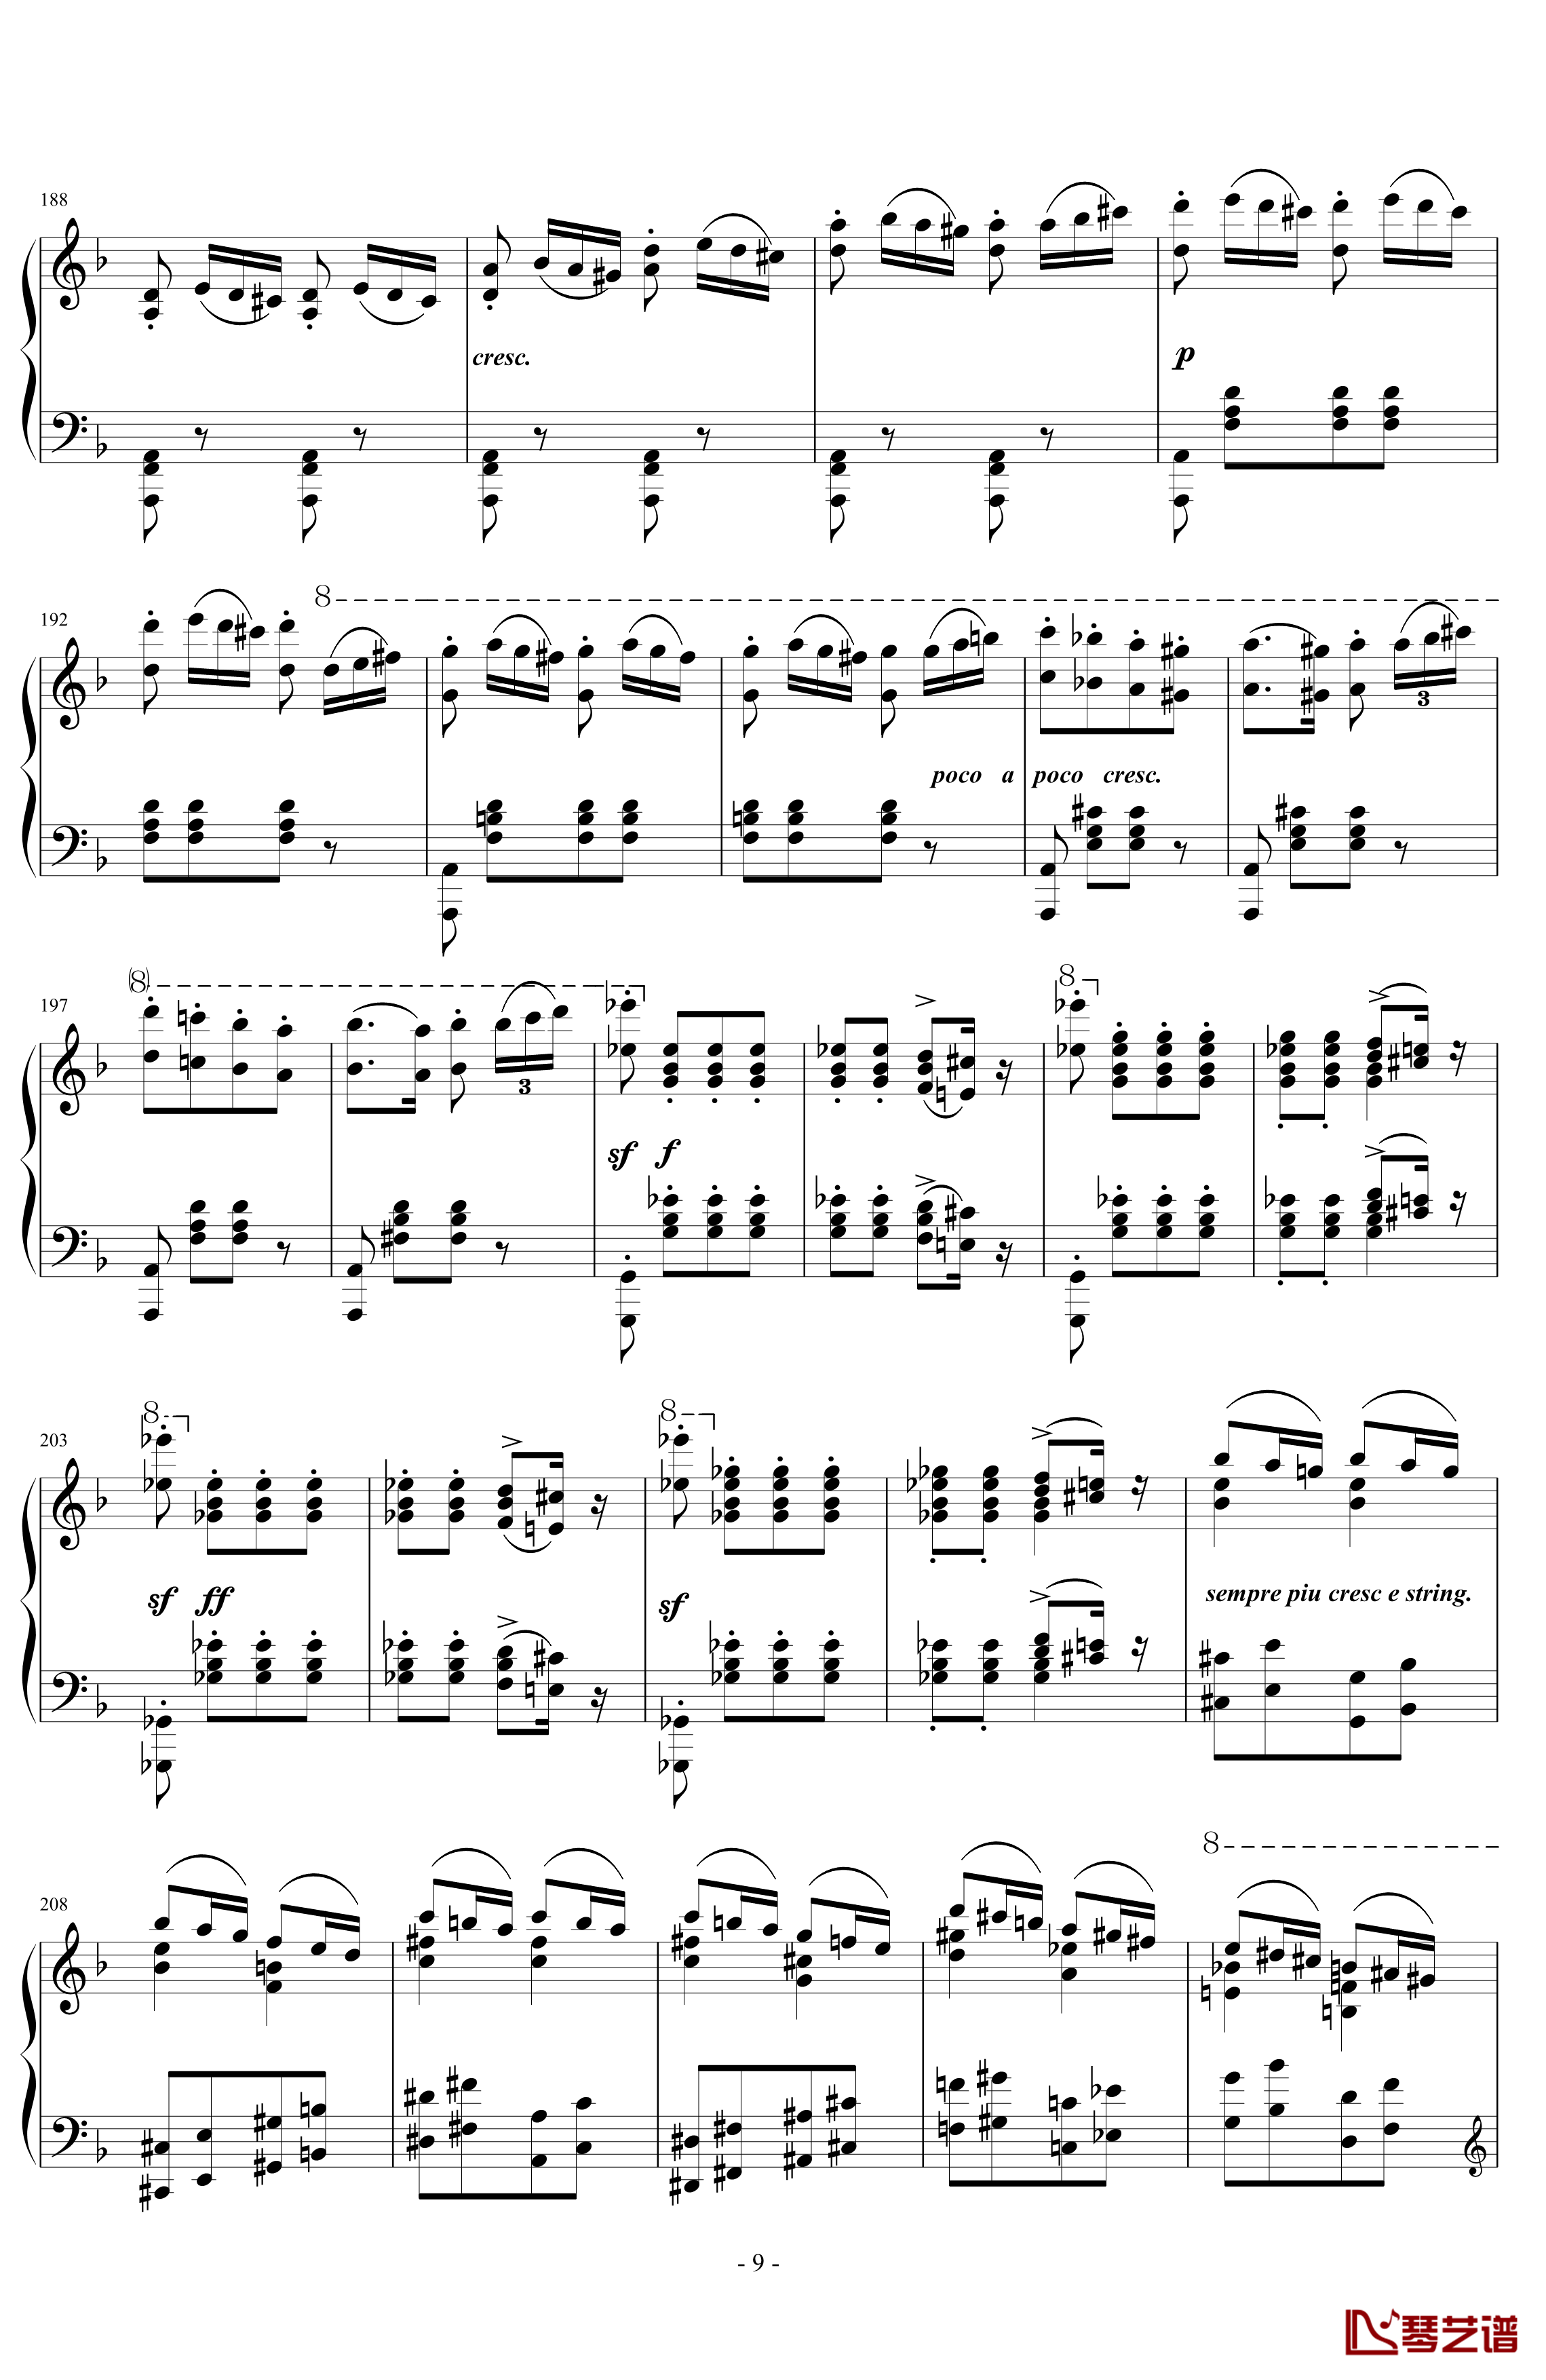 匈牙利狂想曲第7号钢琴谱-一首欢快活泼的舞曲-李斯特9